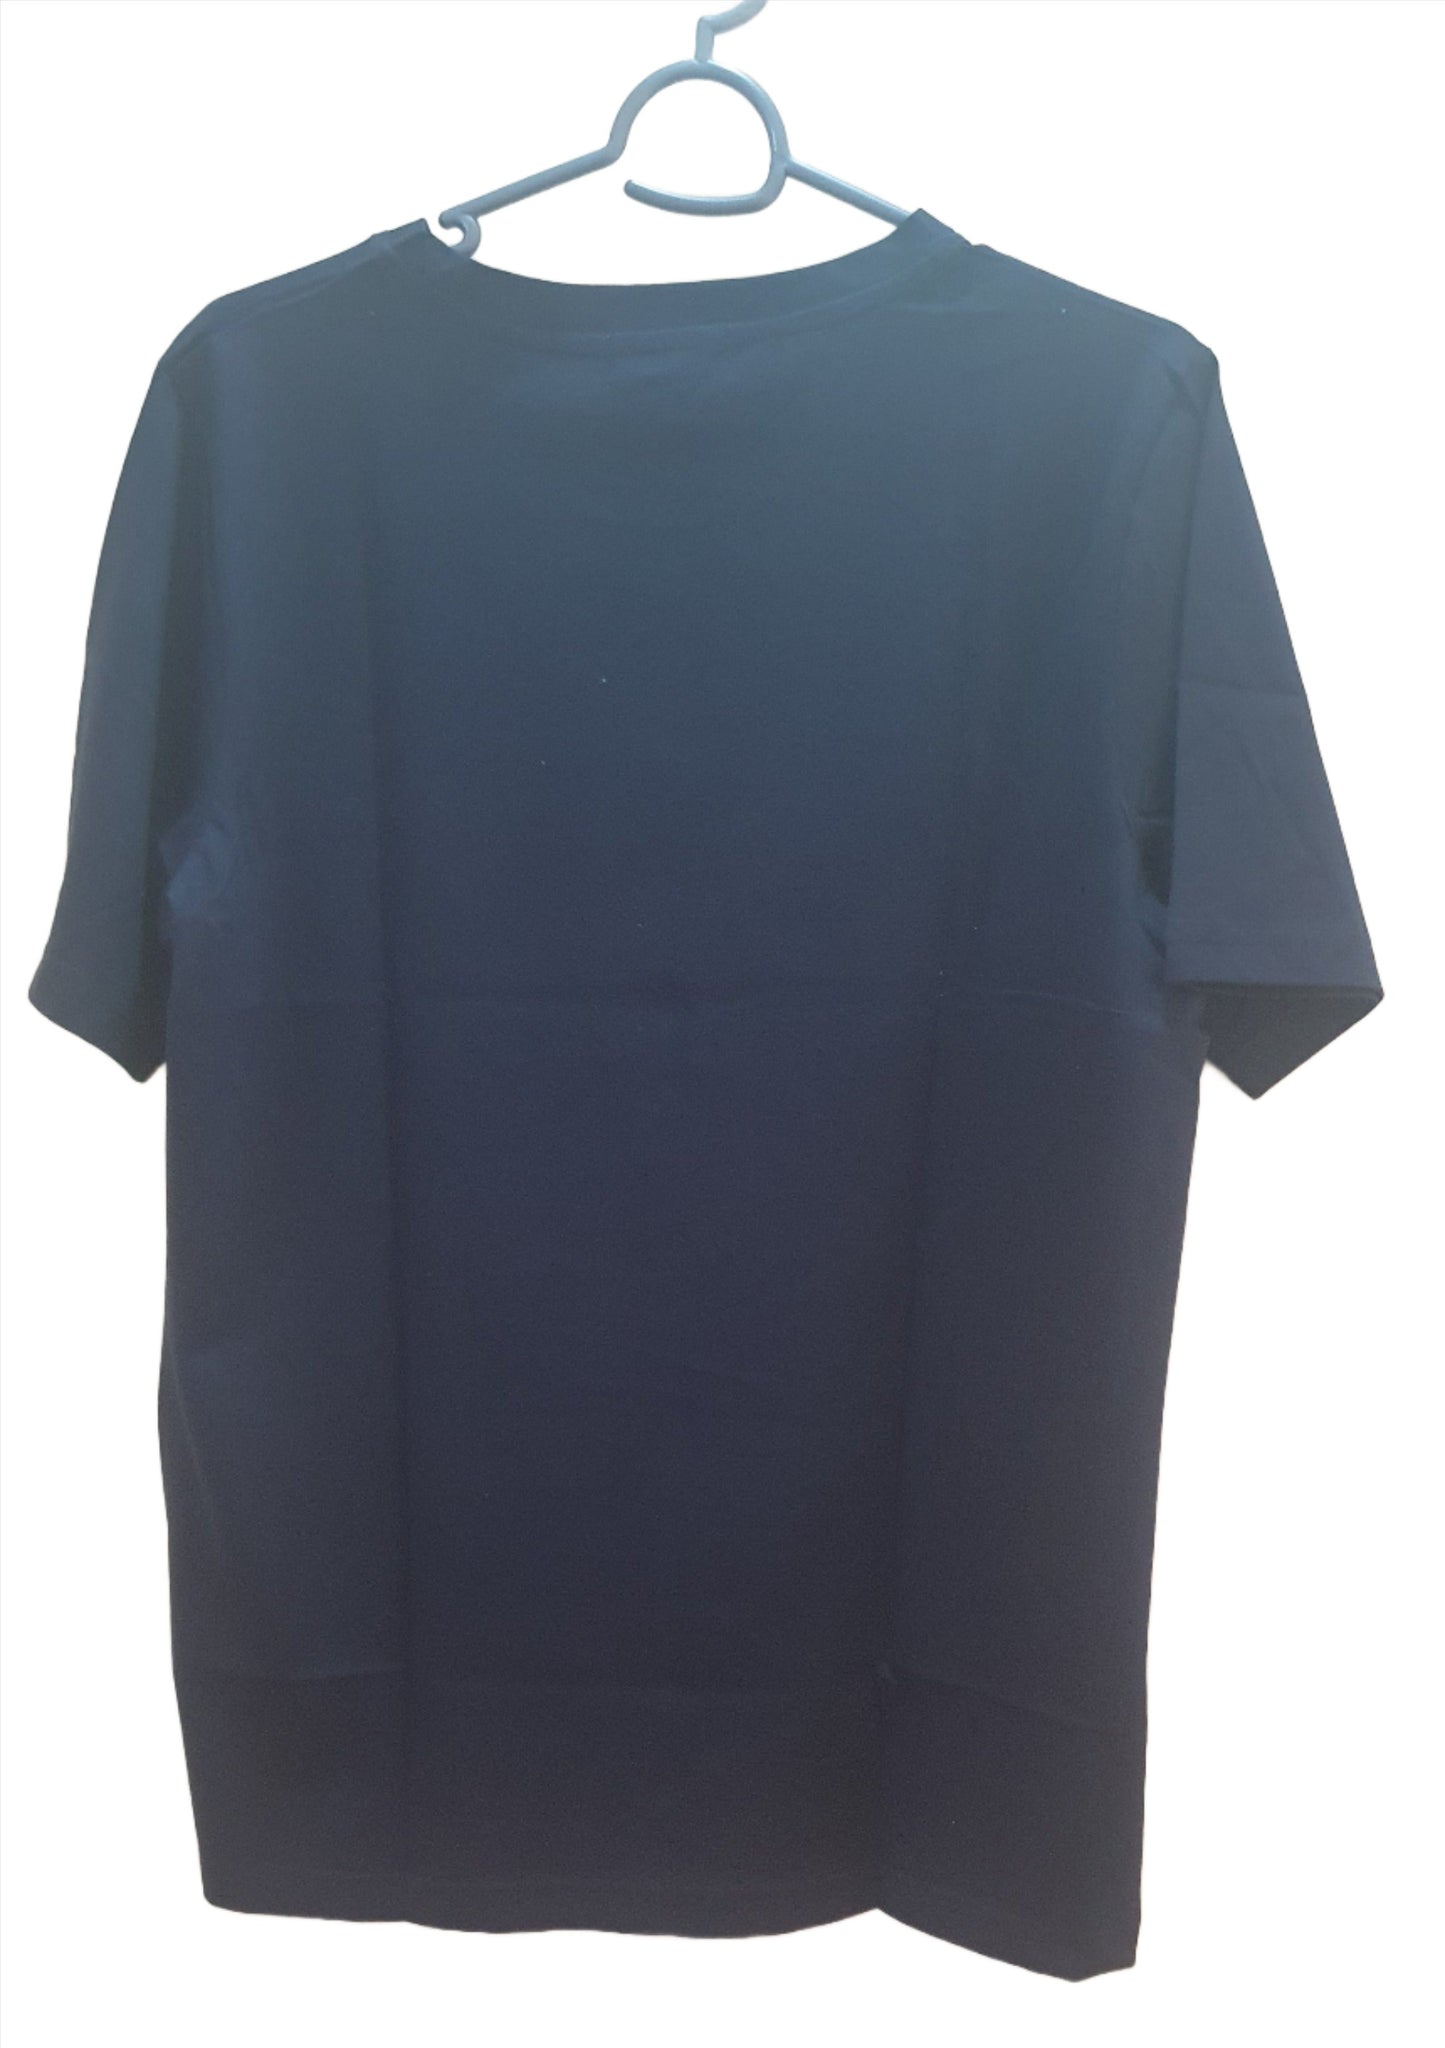 Dark Blue Colour Cotton Tshirt